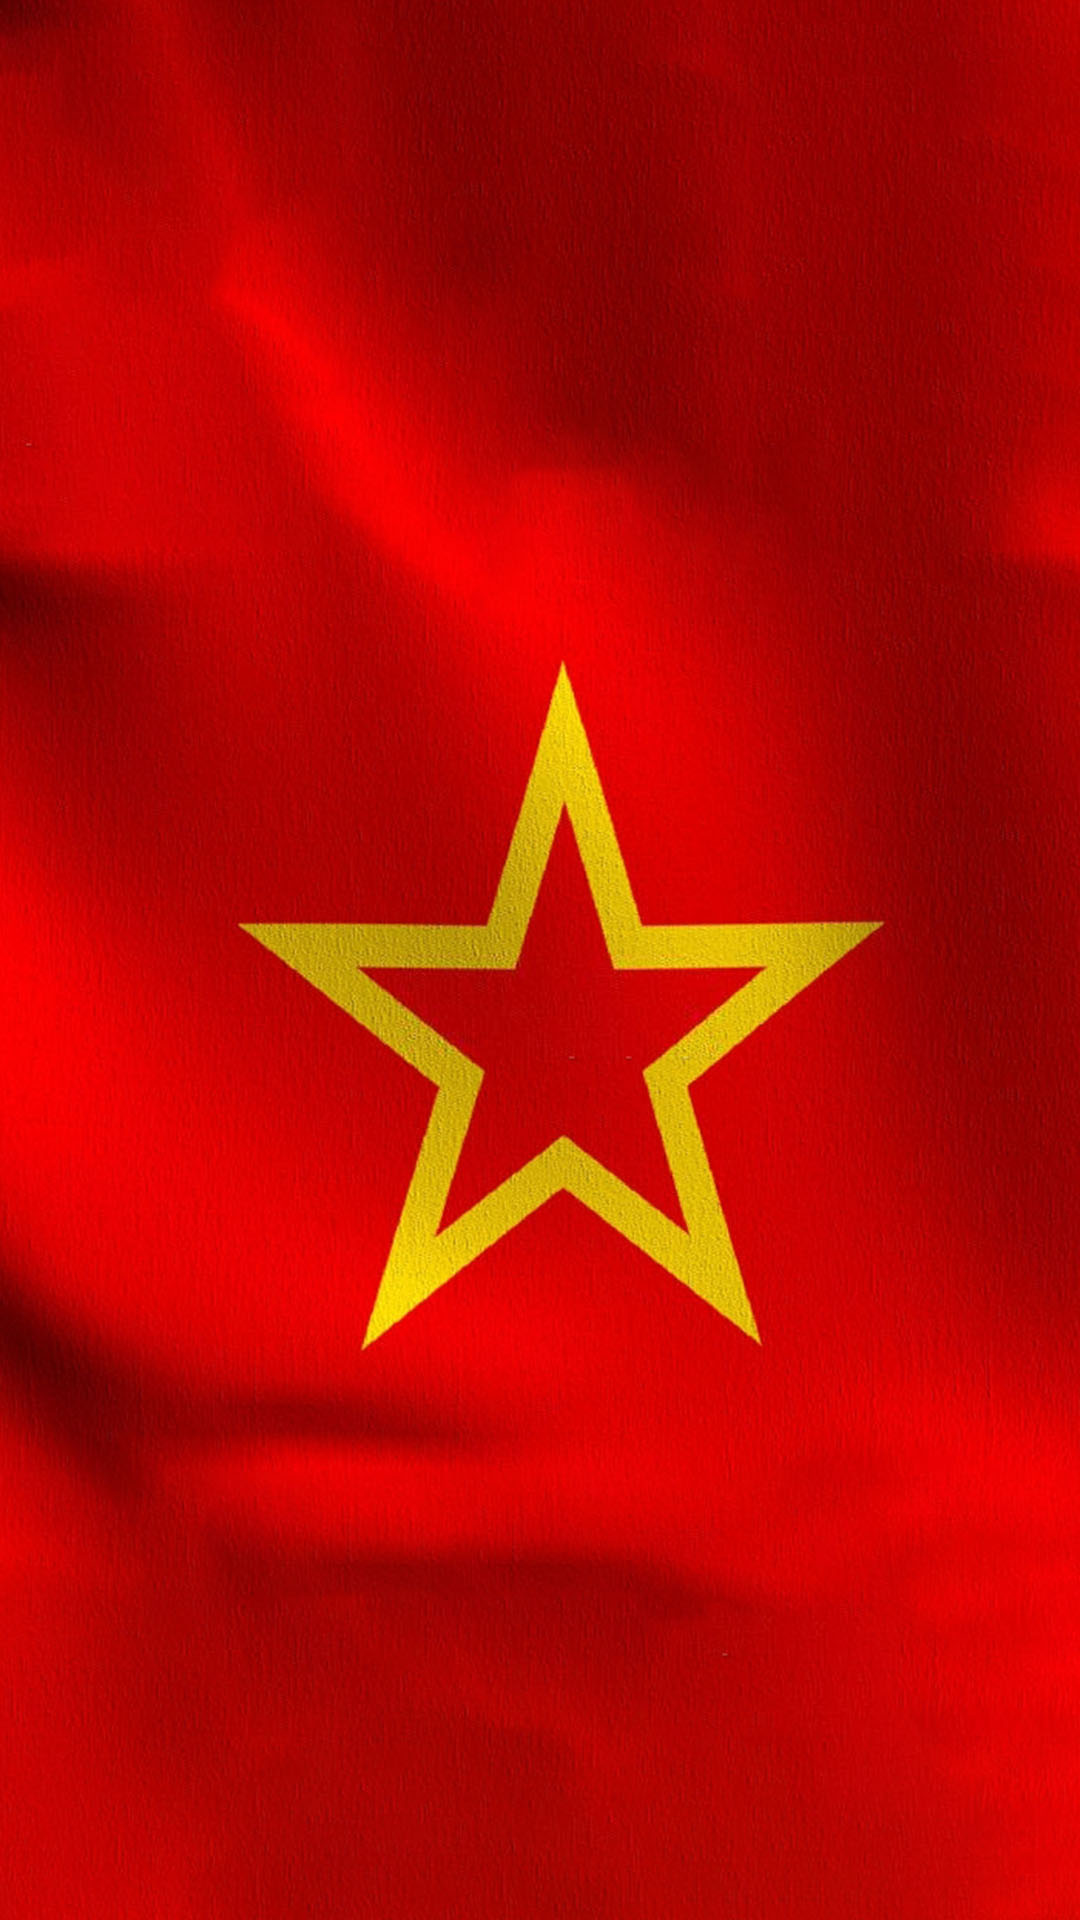 Hình nền cờ Việt Nam mang đến sự tự hào về quê hương và dân tộc cho người Việt. Nó đại diện cho sự đoàn kết và lòng yêu nước, làm cho mọi người cảm thấy gần gũi và thân thuộc hơn với đất nước.